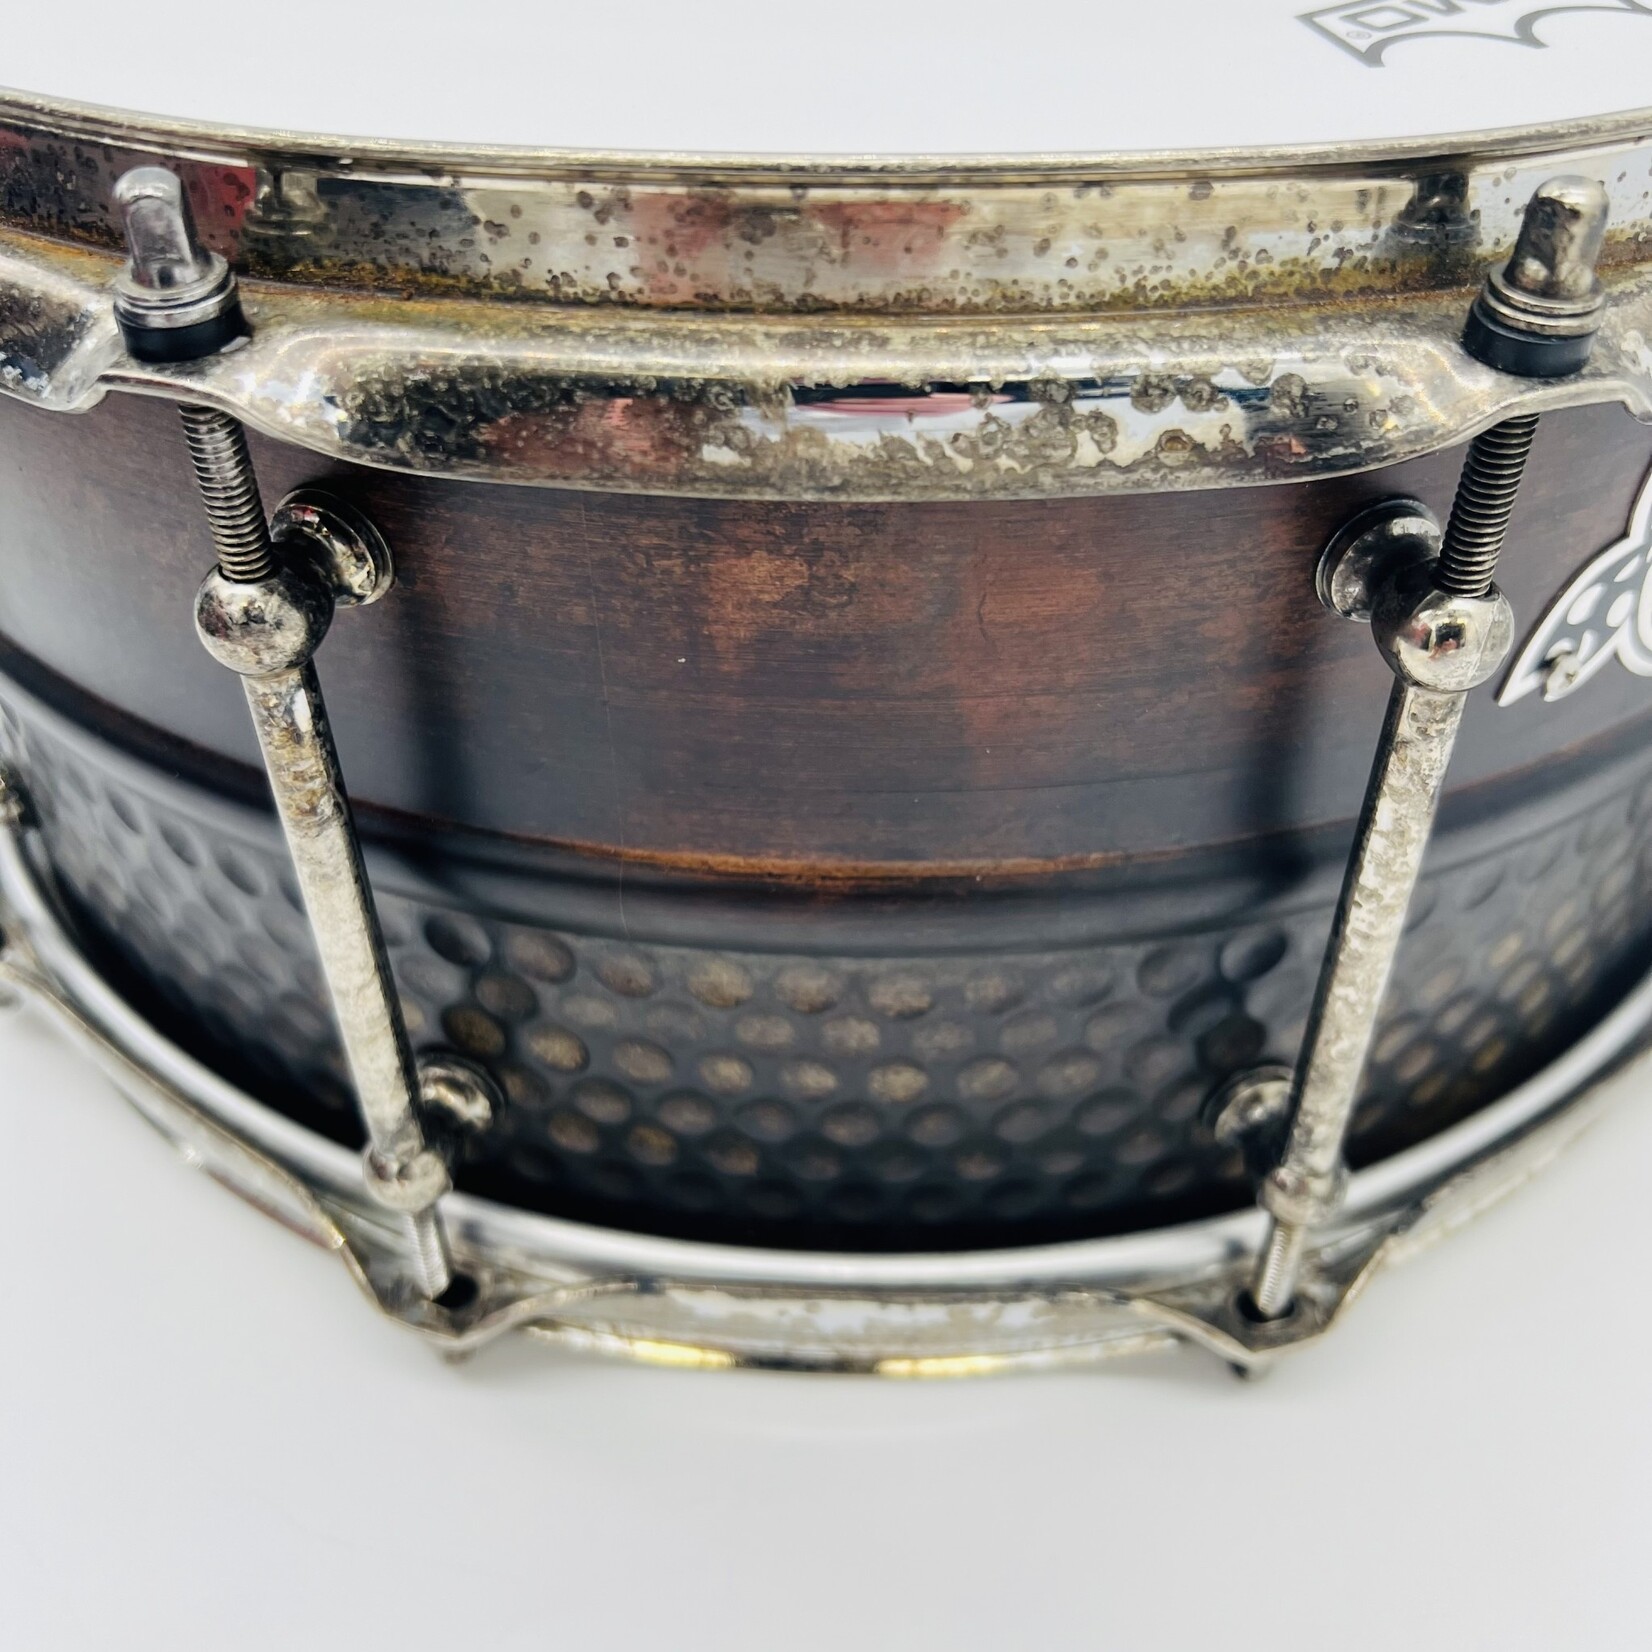 Pork Pie Pork Pie 6.5x14" Patina Copper & Hammered Brass Snare Drum (Aged Hardware)